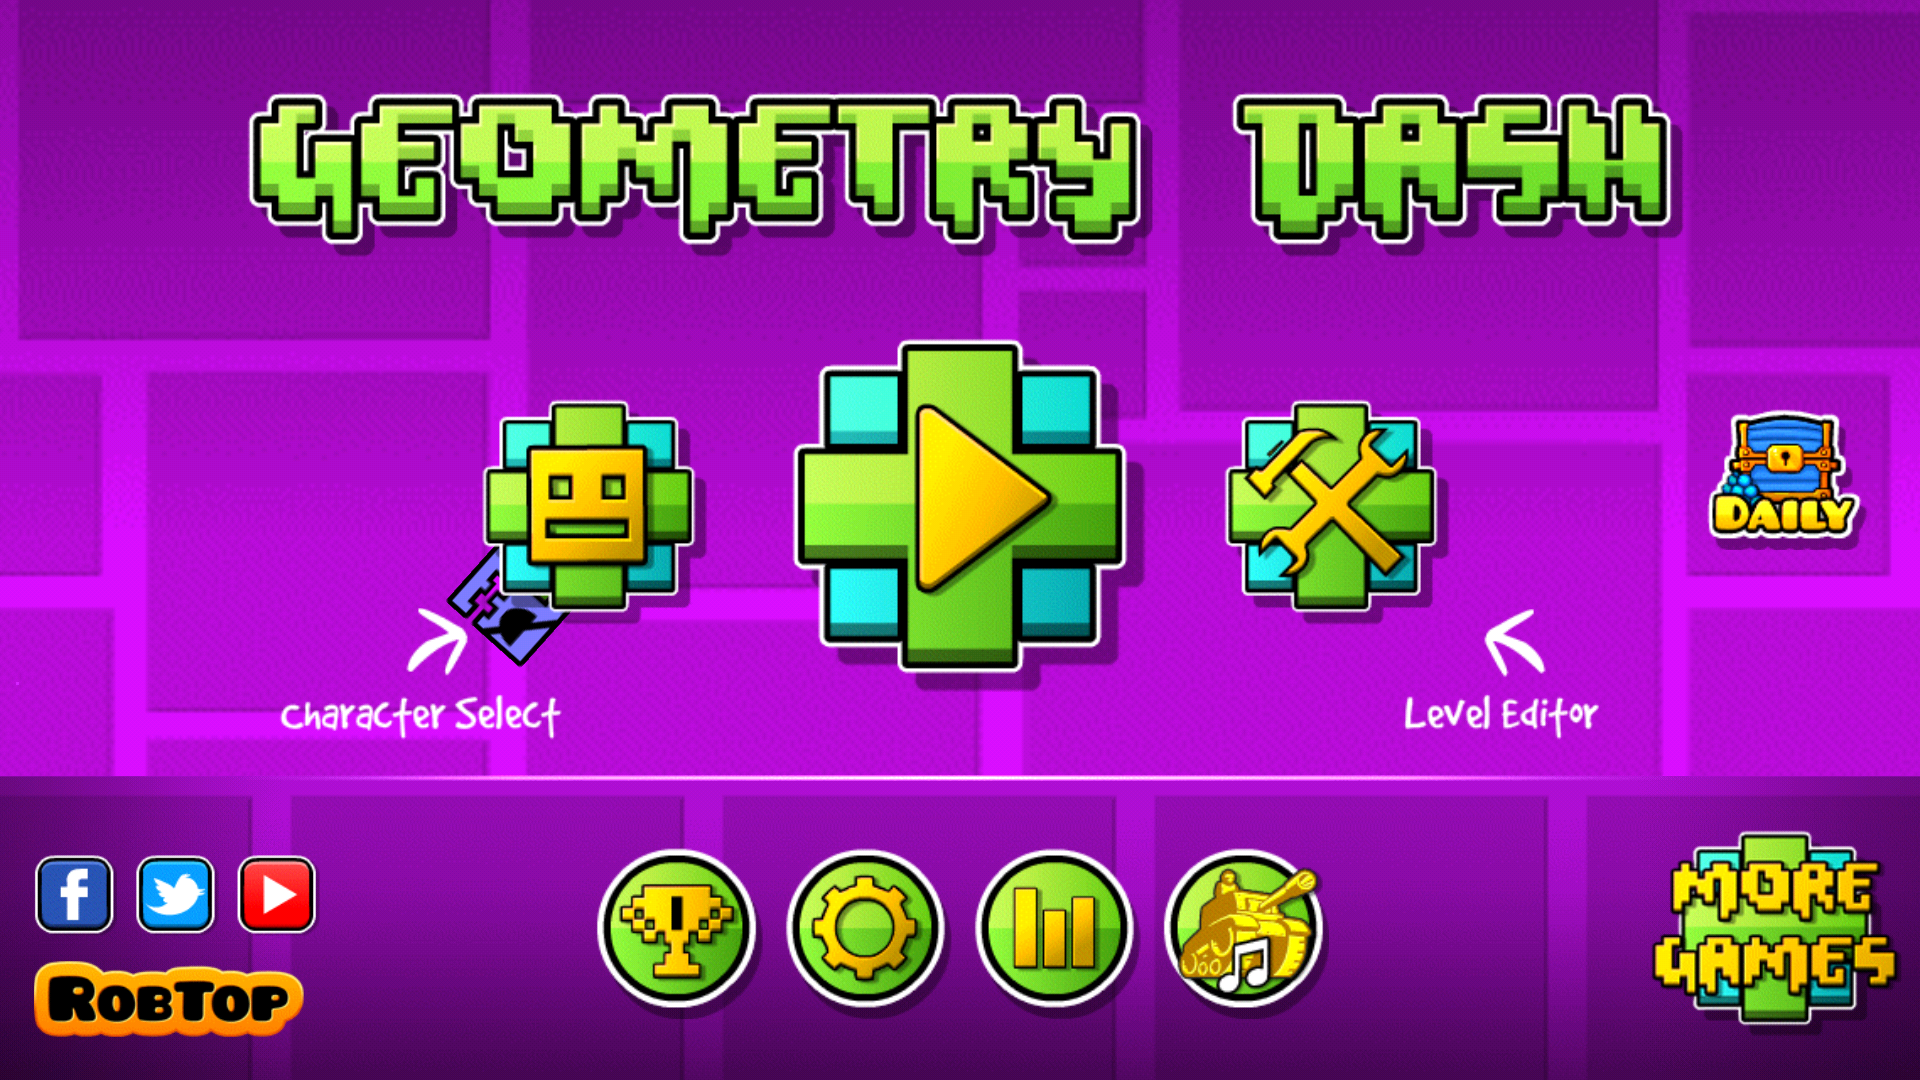 Download Geometry Dash App for iOS  Geometry Dash Full ...